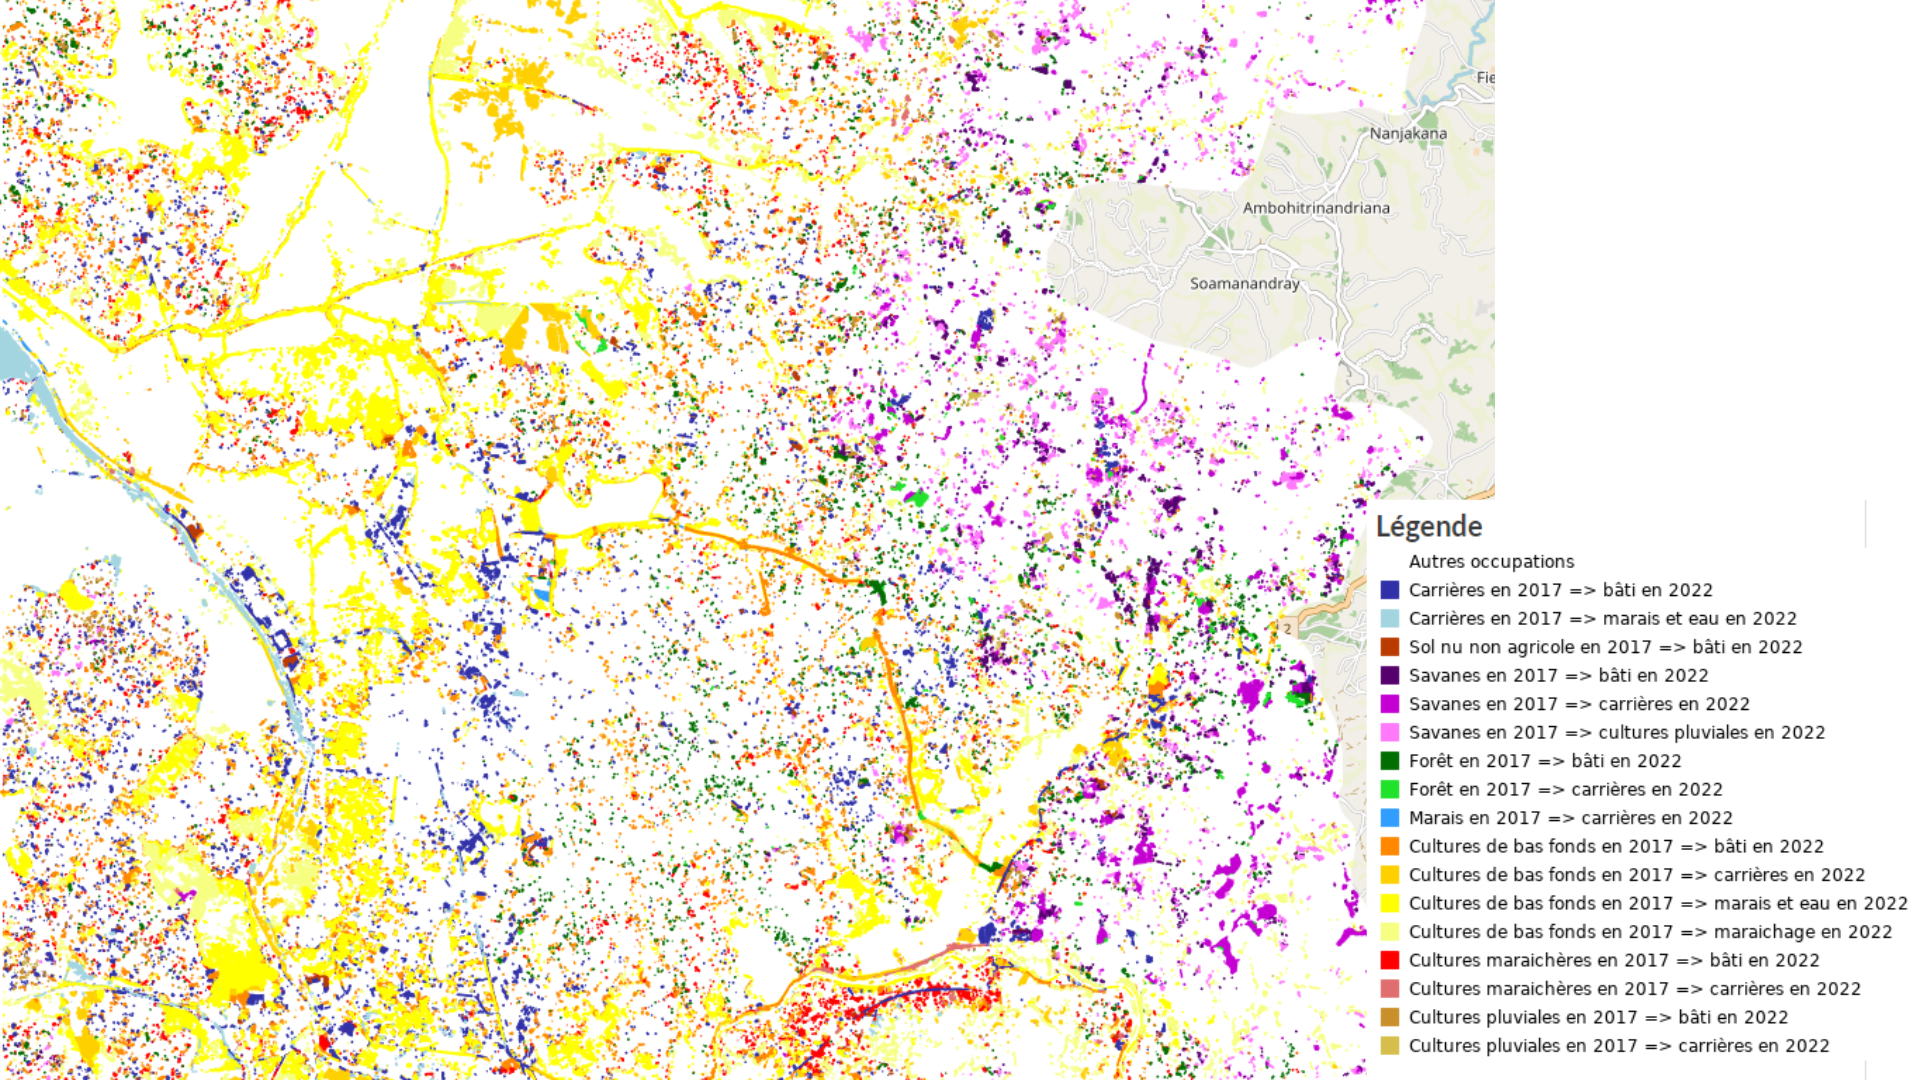 Cartographie des changements d'occupation du sol calculés à partir du croisement des cartes de 2017 et 2022 pour l'agglomération d'Antanananrivo, Madagascar